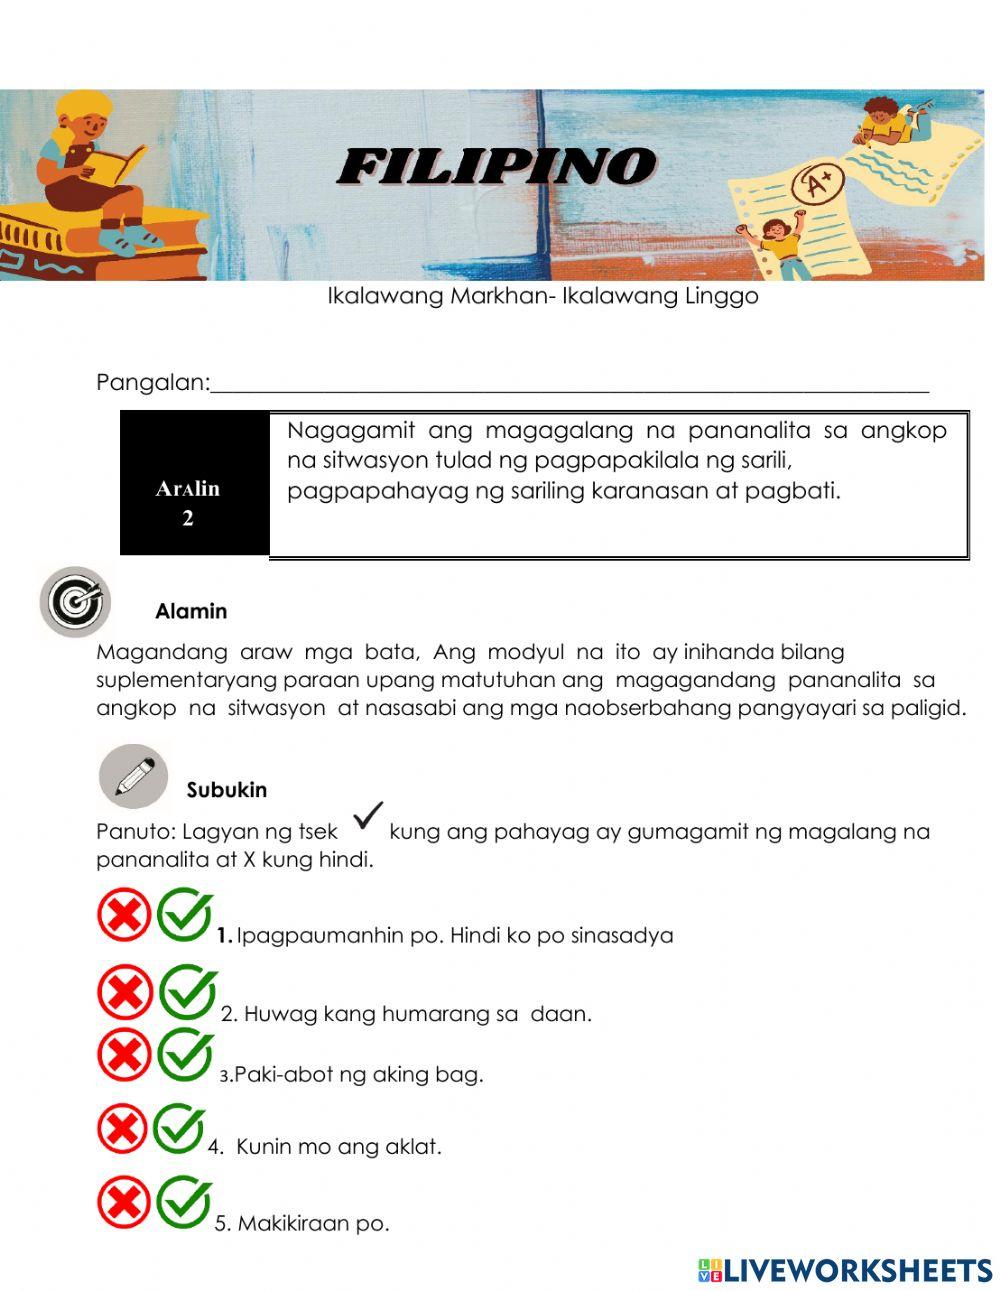 Filipino week 2 Q2